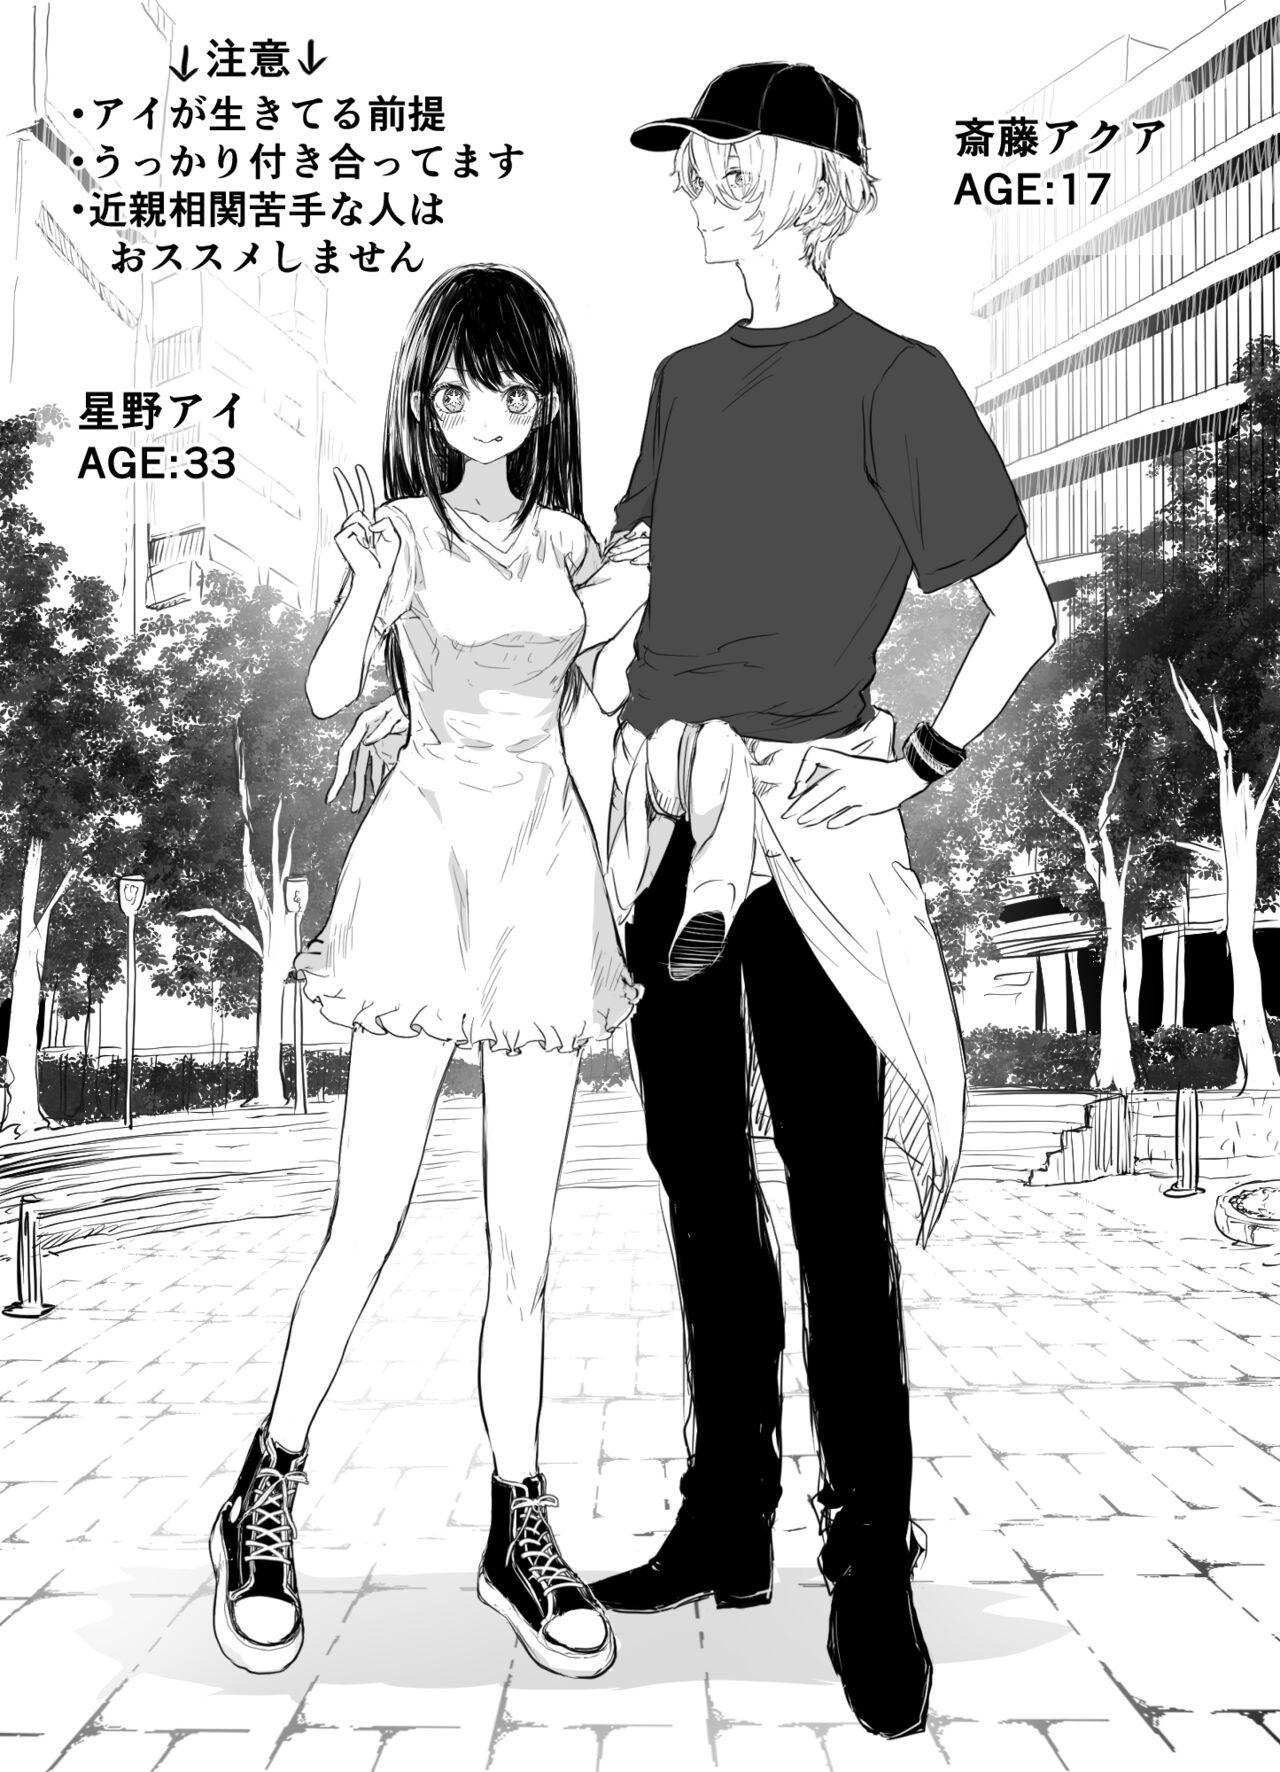 Cumming AquAi Manga - Oshi no ko Nipple - Picture 1